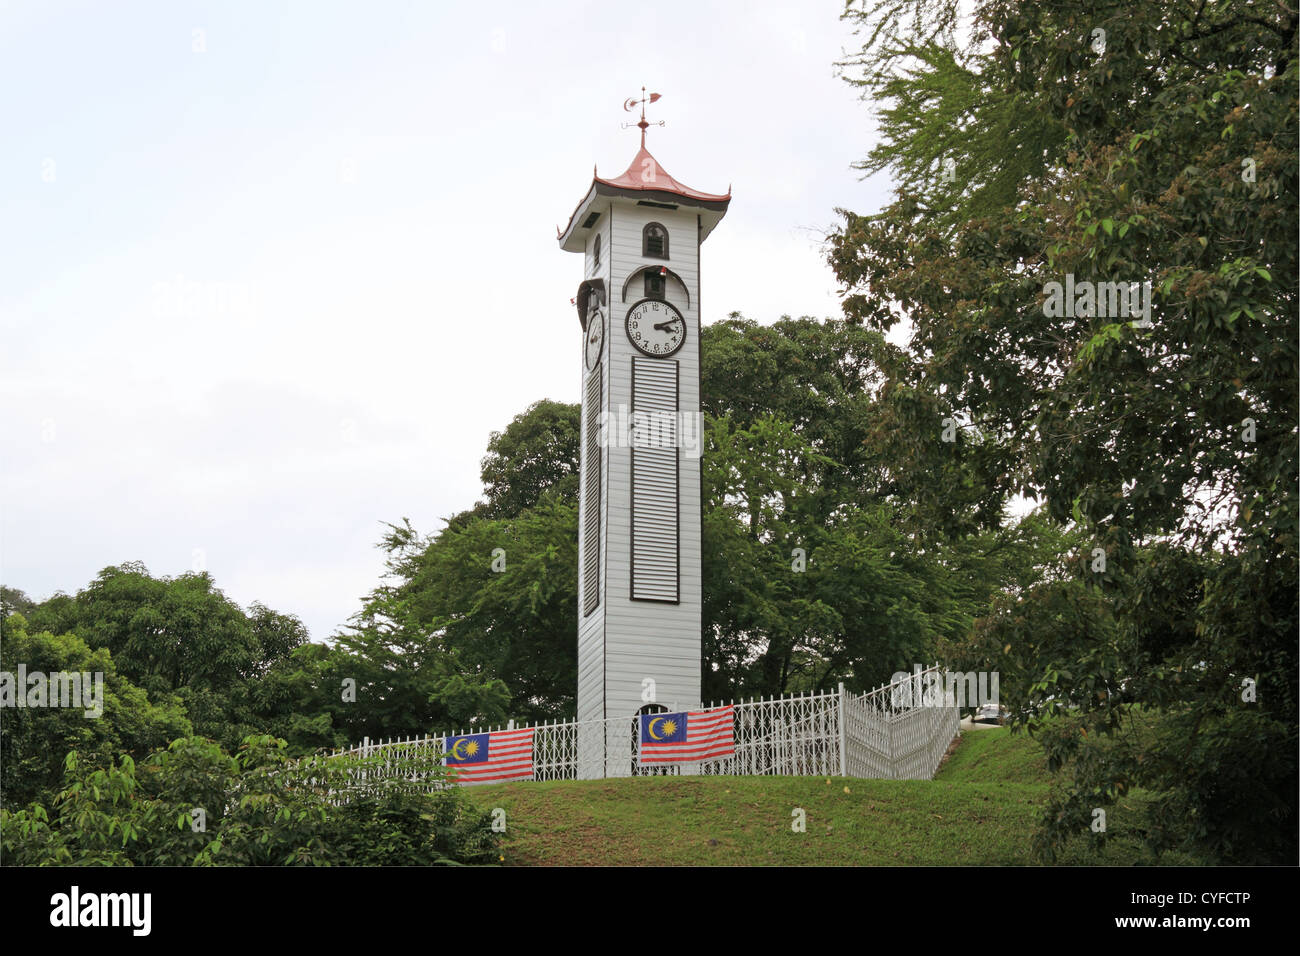 Tour de l'horloge Atkinson, Brace Hill, Kota Kinabalu, Sabah, Bornéo, Malaisie, en Asie du sud-est Banque D'Images